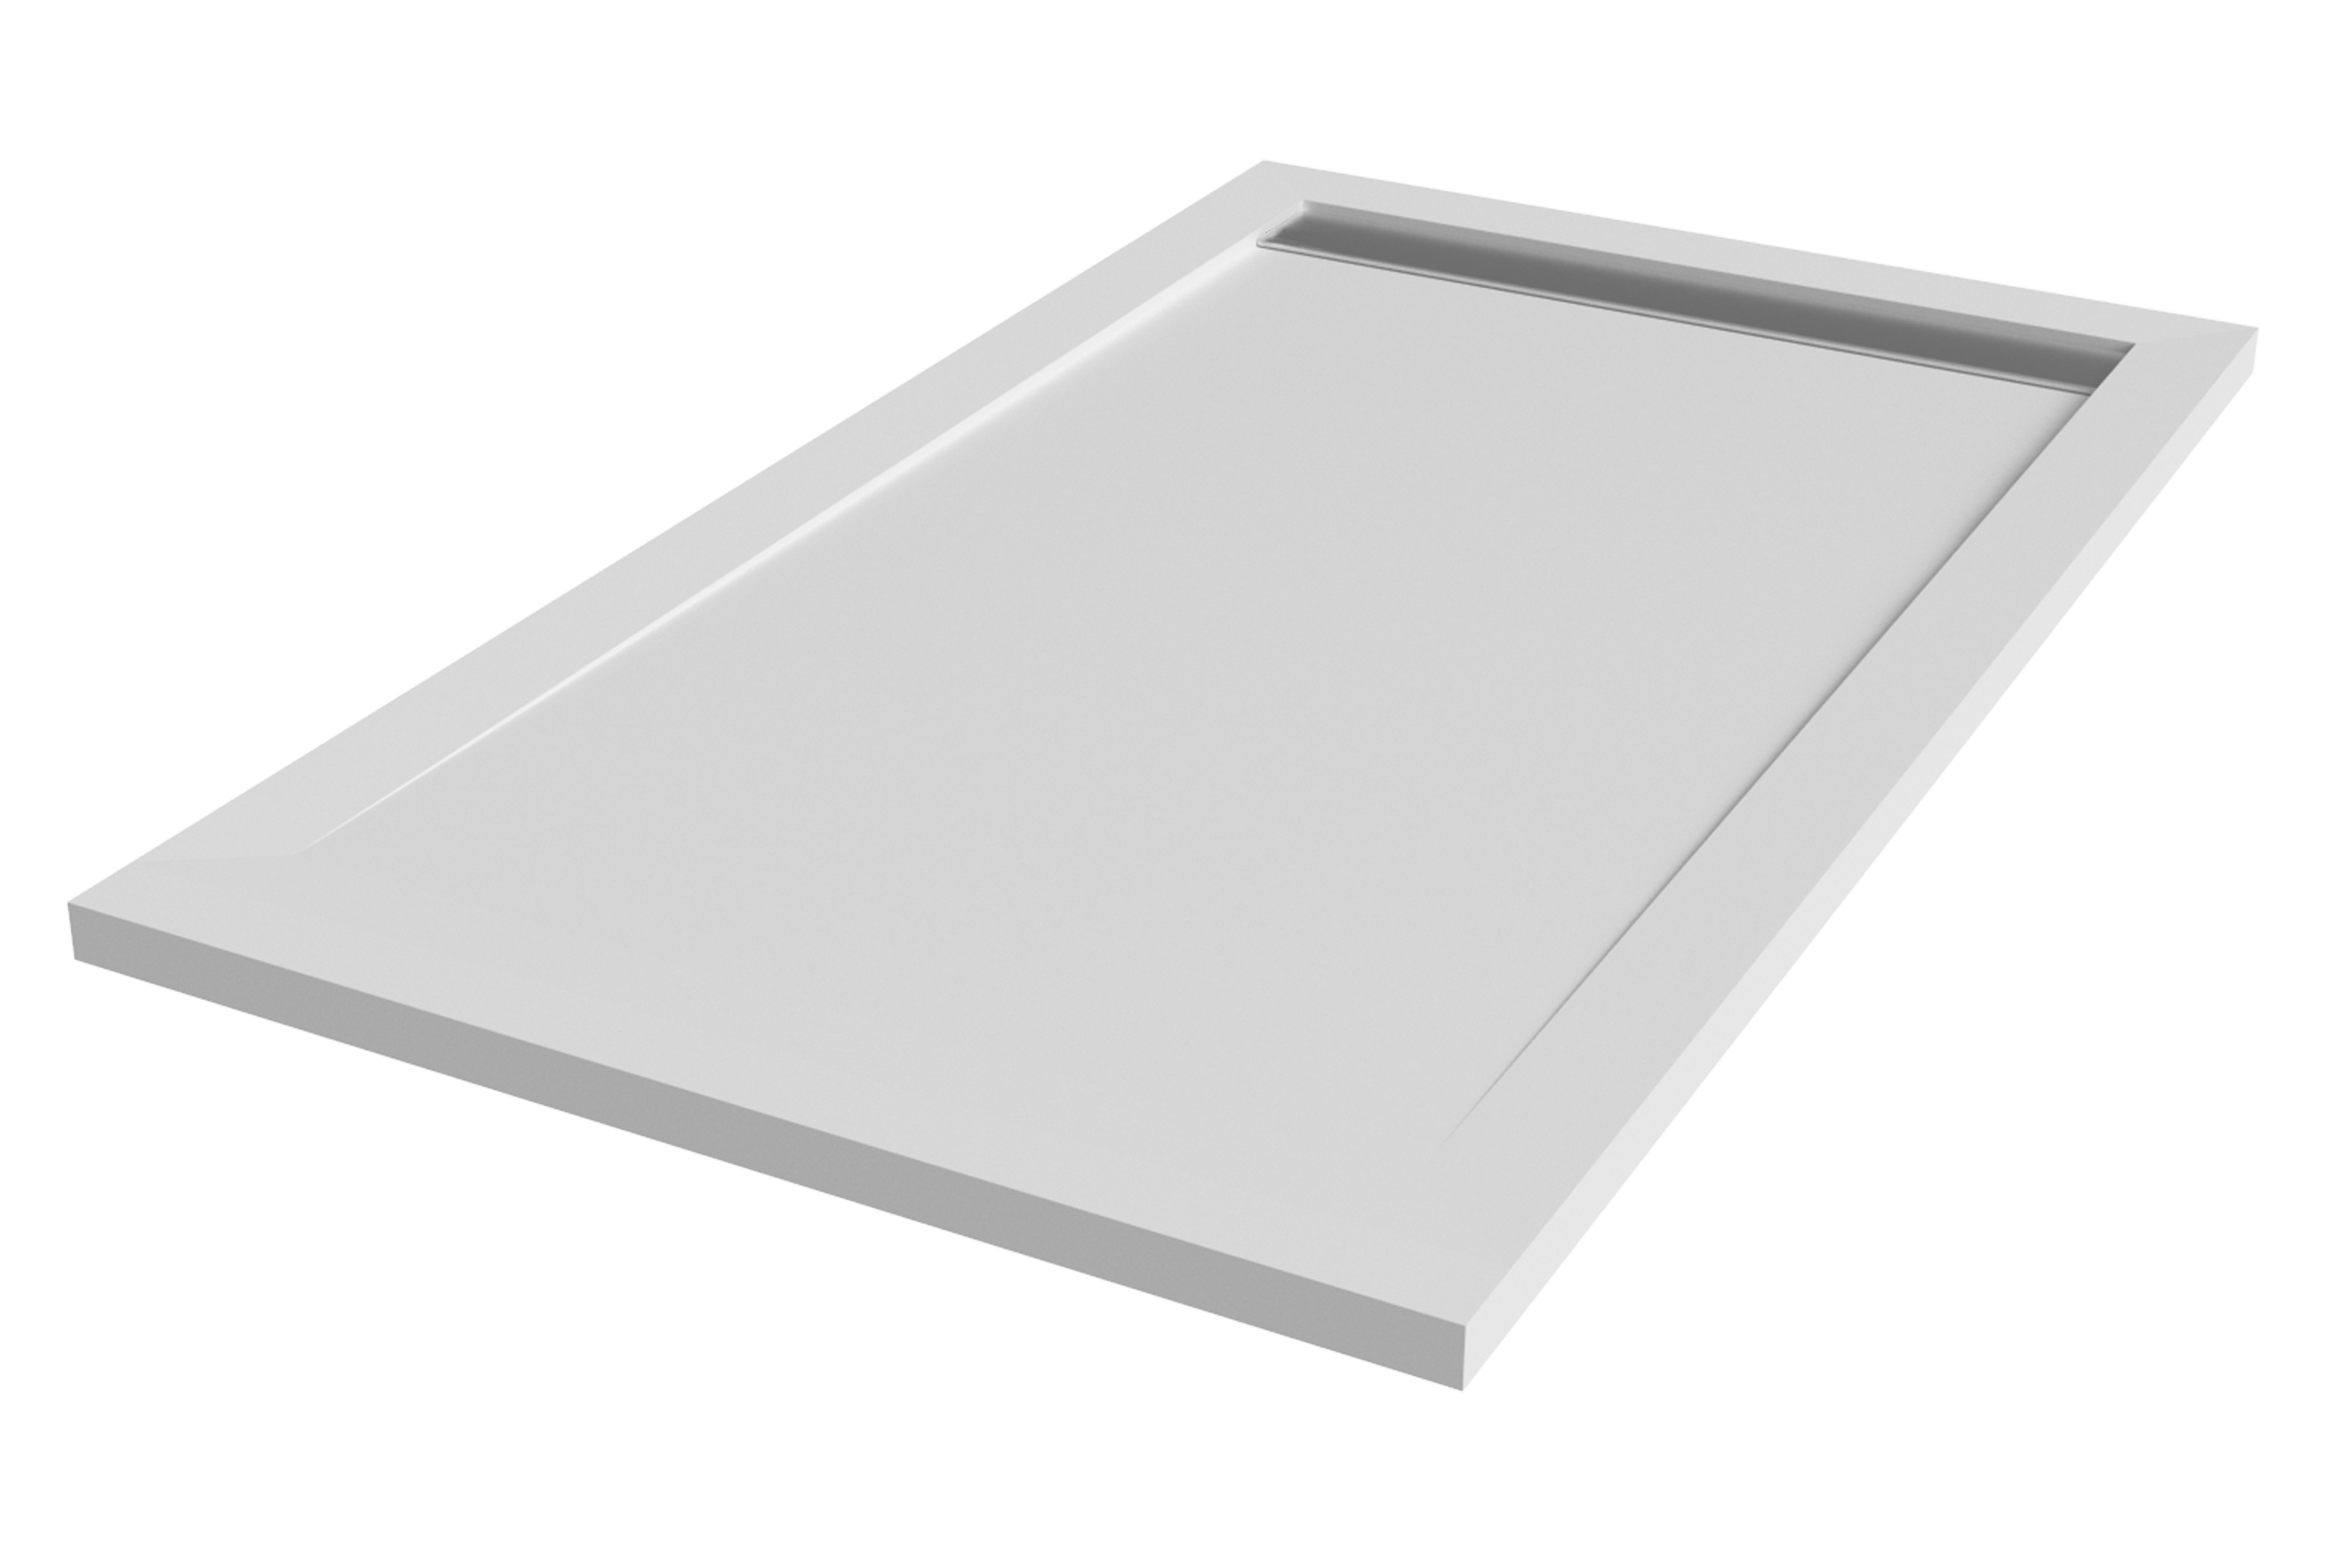 Plato de ducha kaliso 140x100 cm blanco